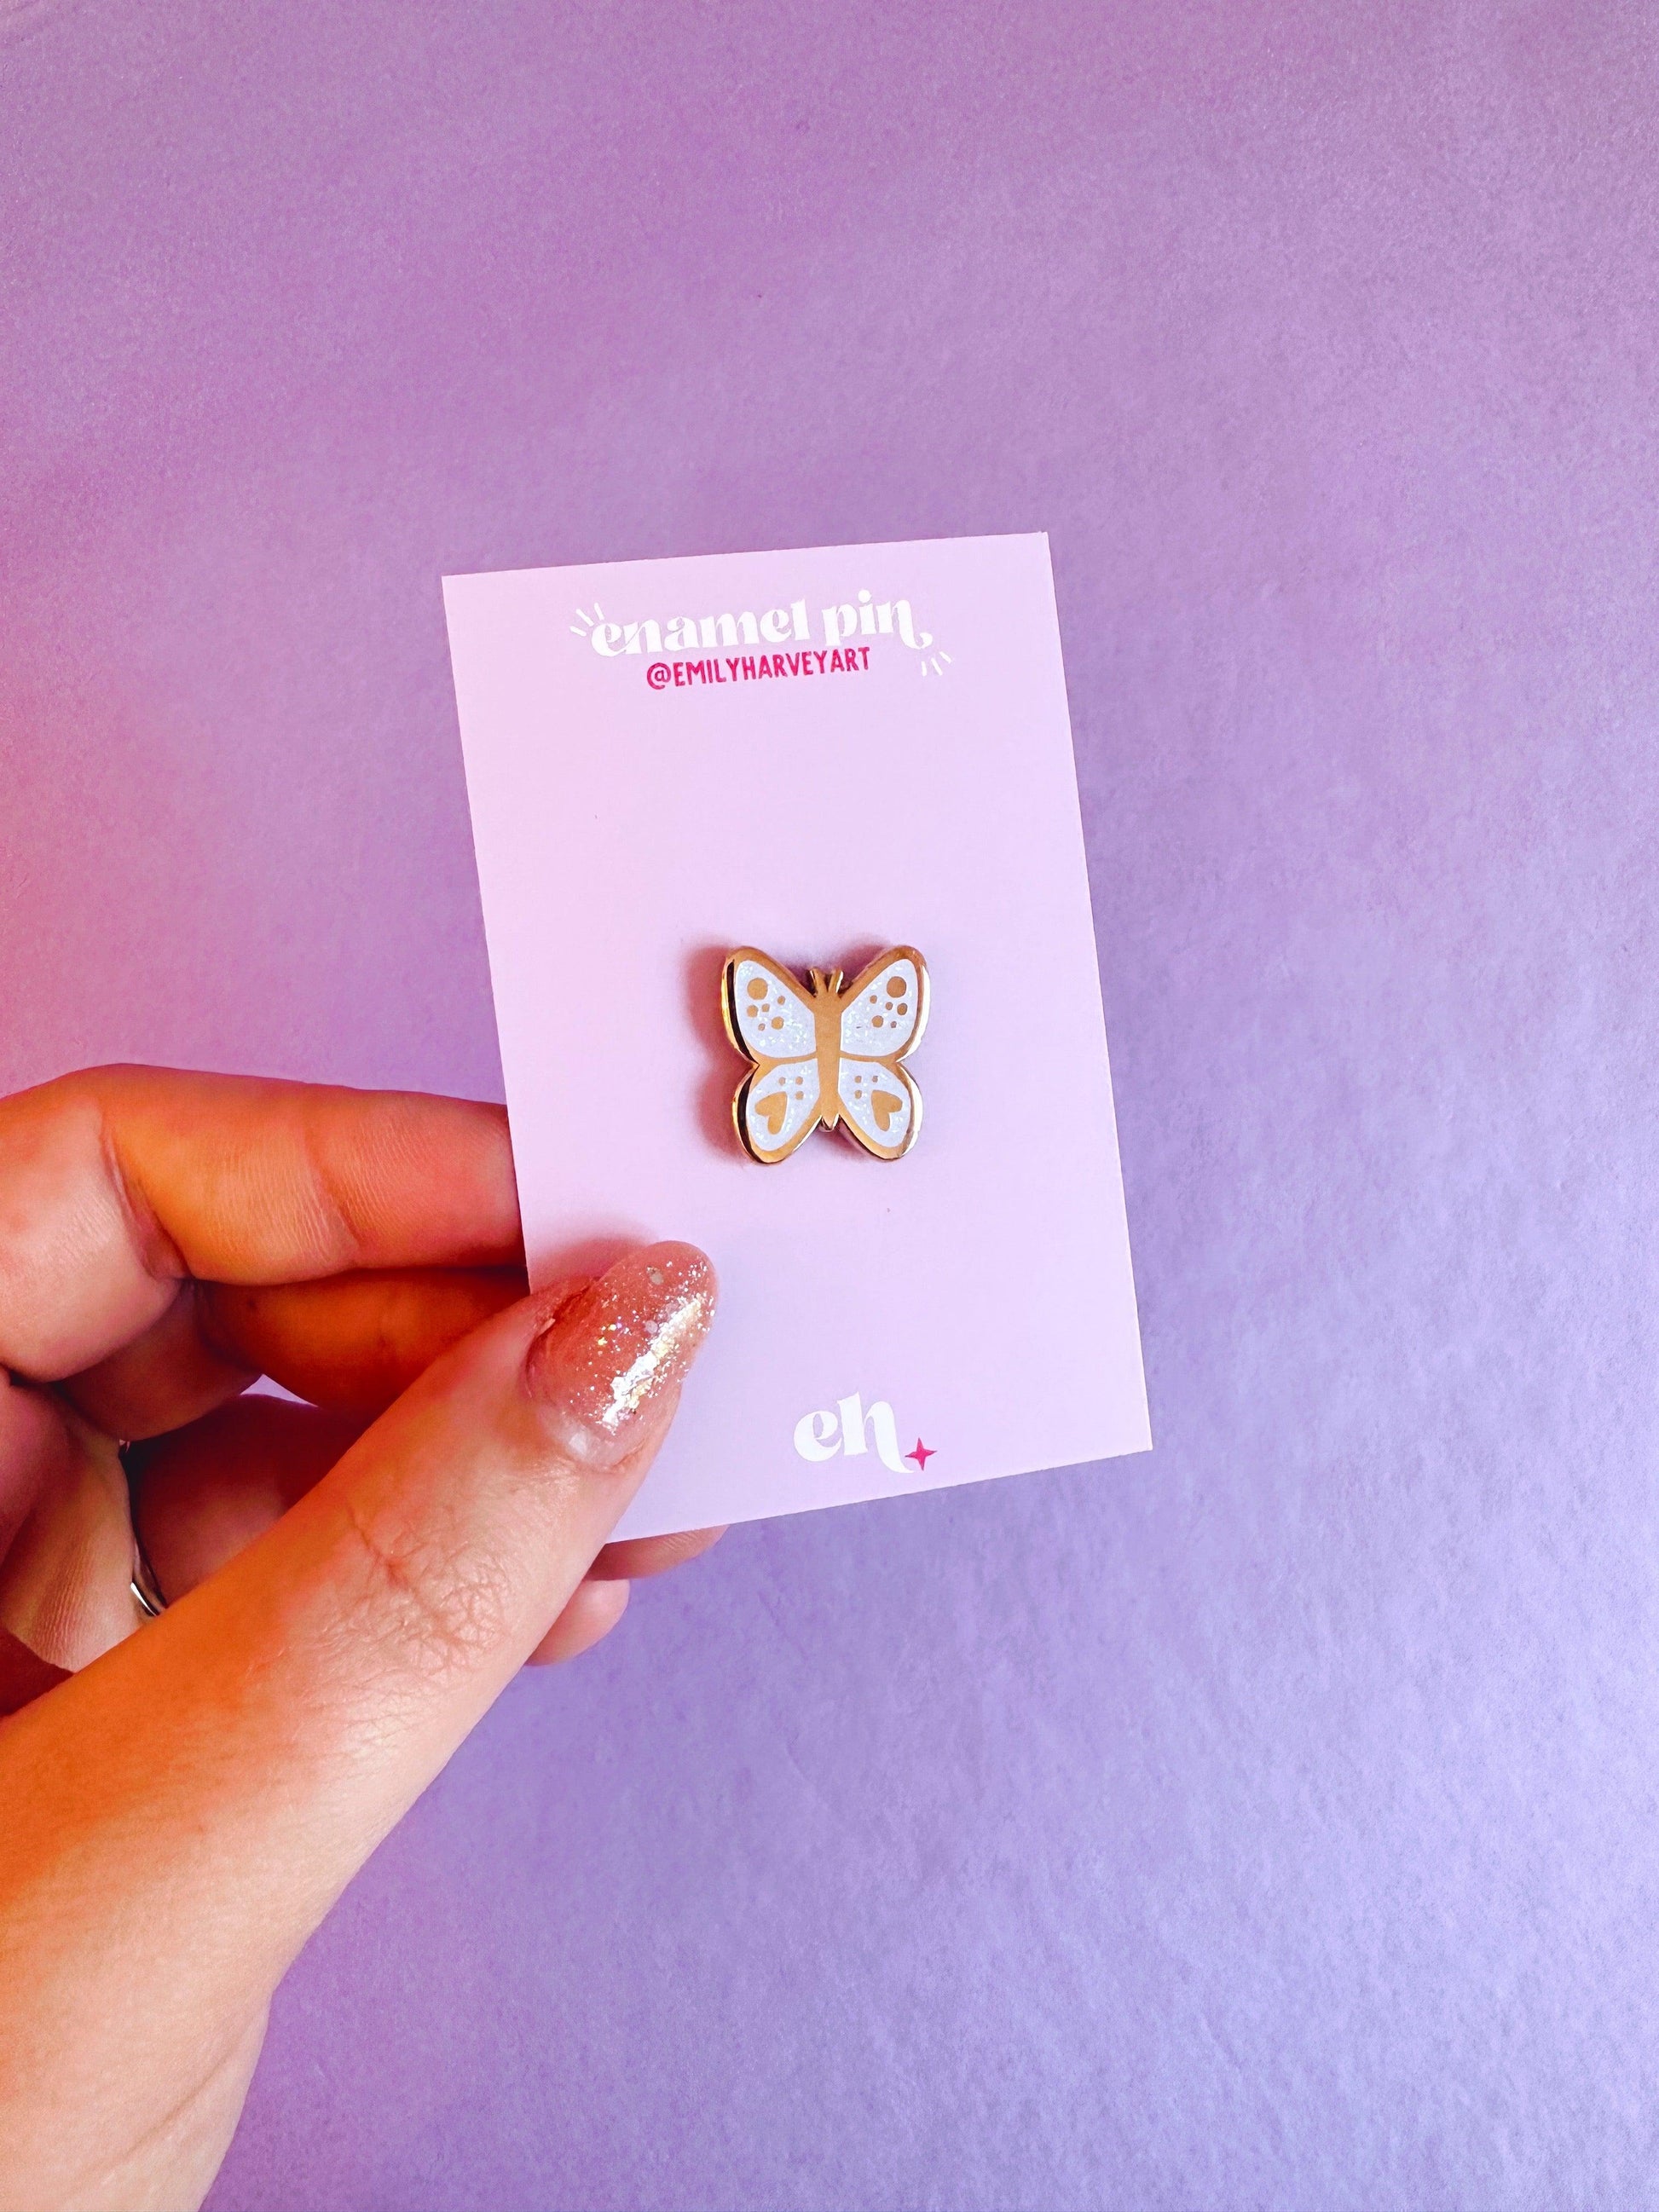 Butterfly Mini Enamel Pin - Emily Harvey Art